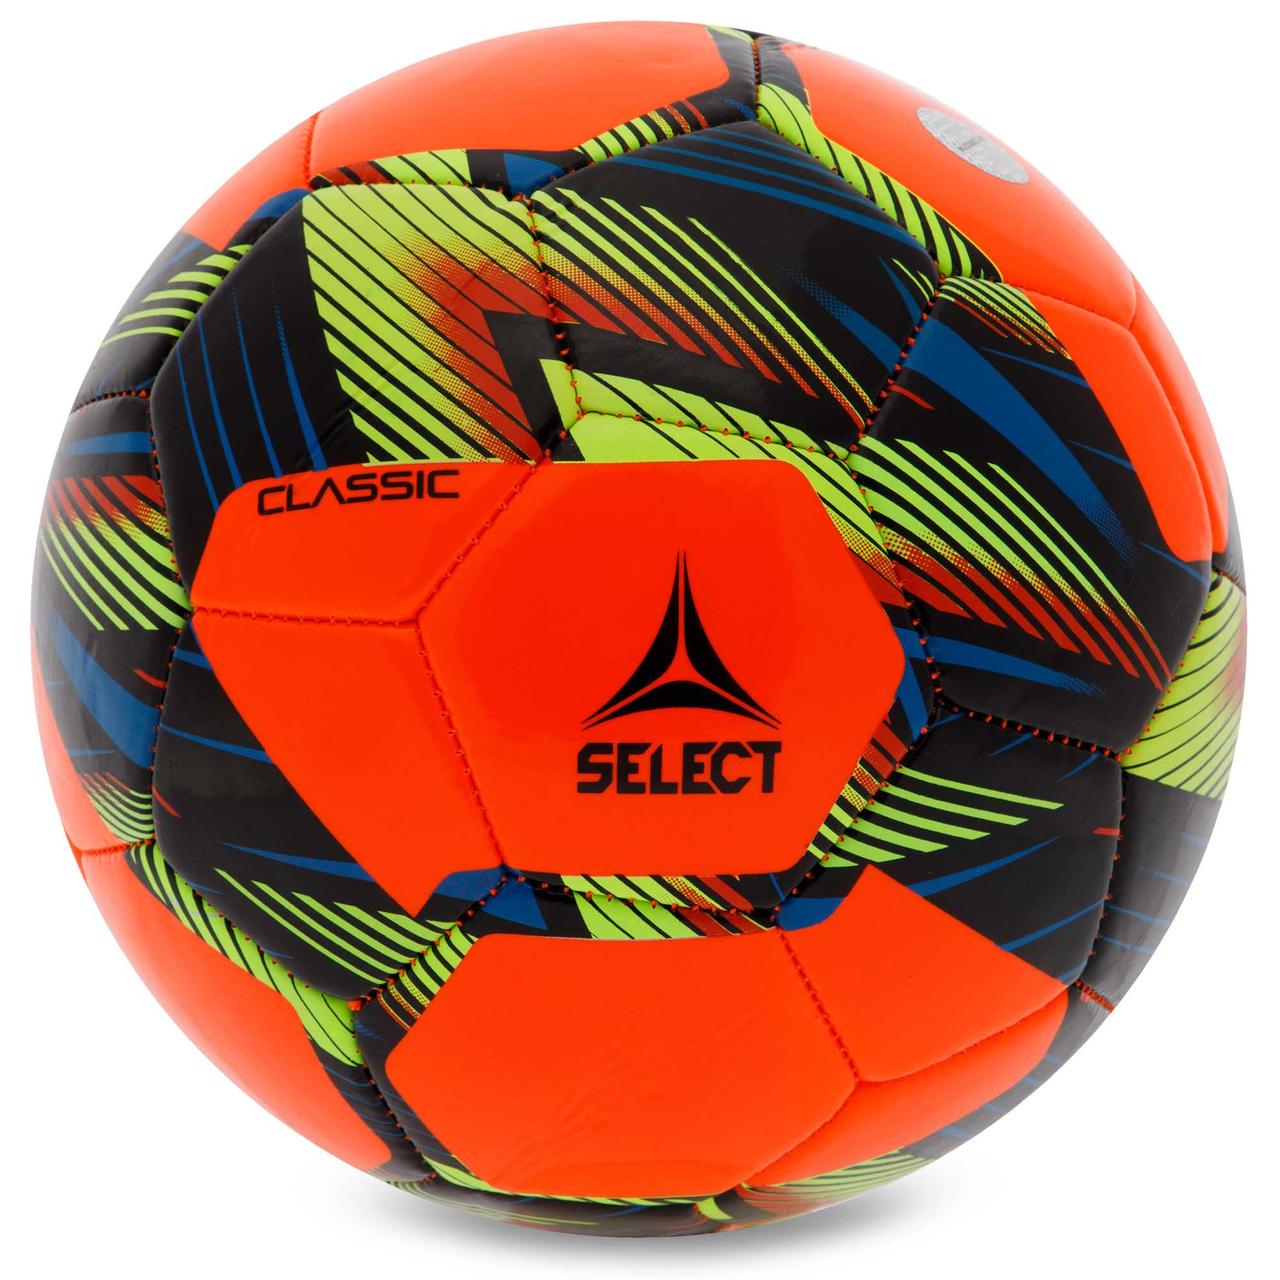 М'яч футбольний №5 SELECT CLASSIC V23 CLASSIC-5BK помарнчевий-чорний